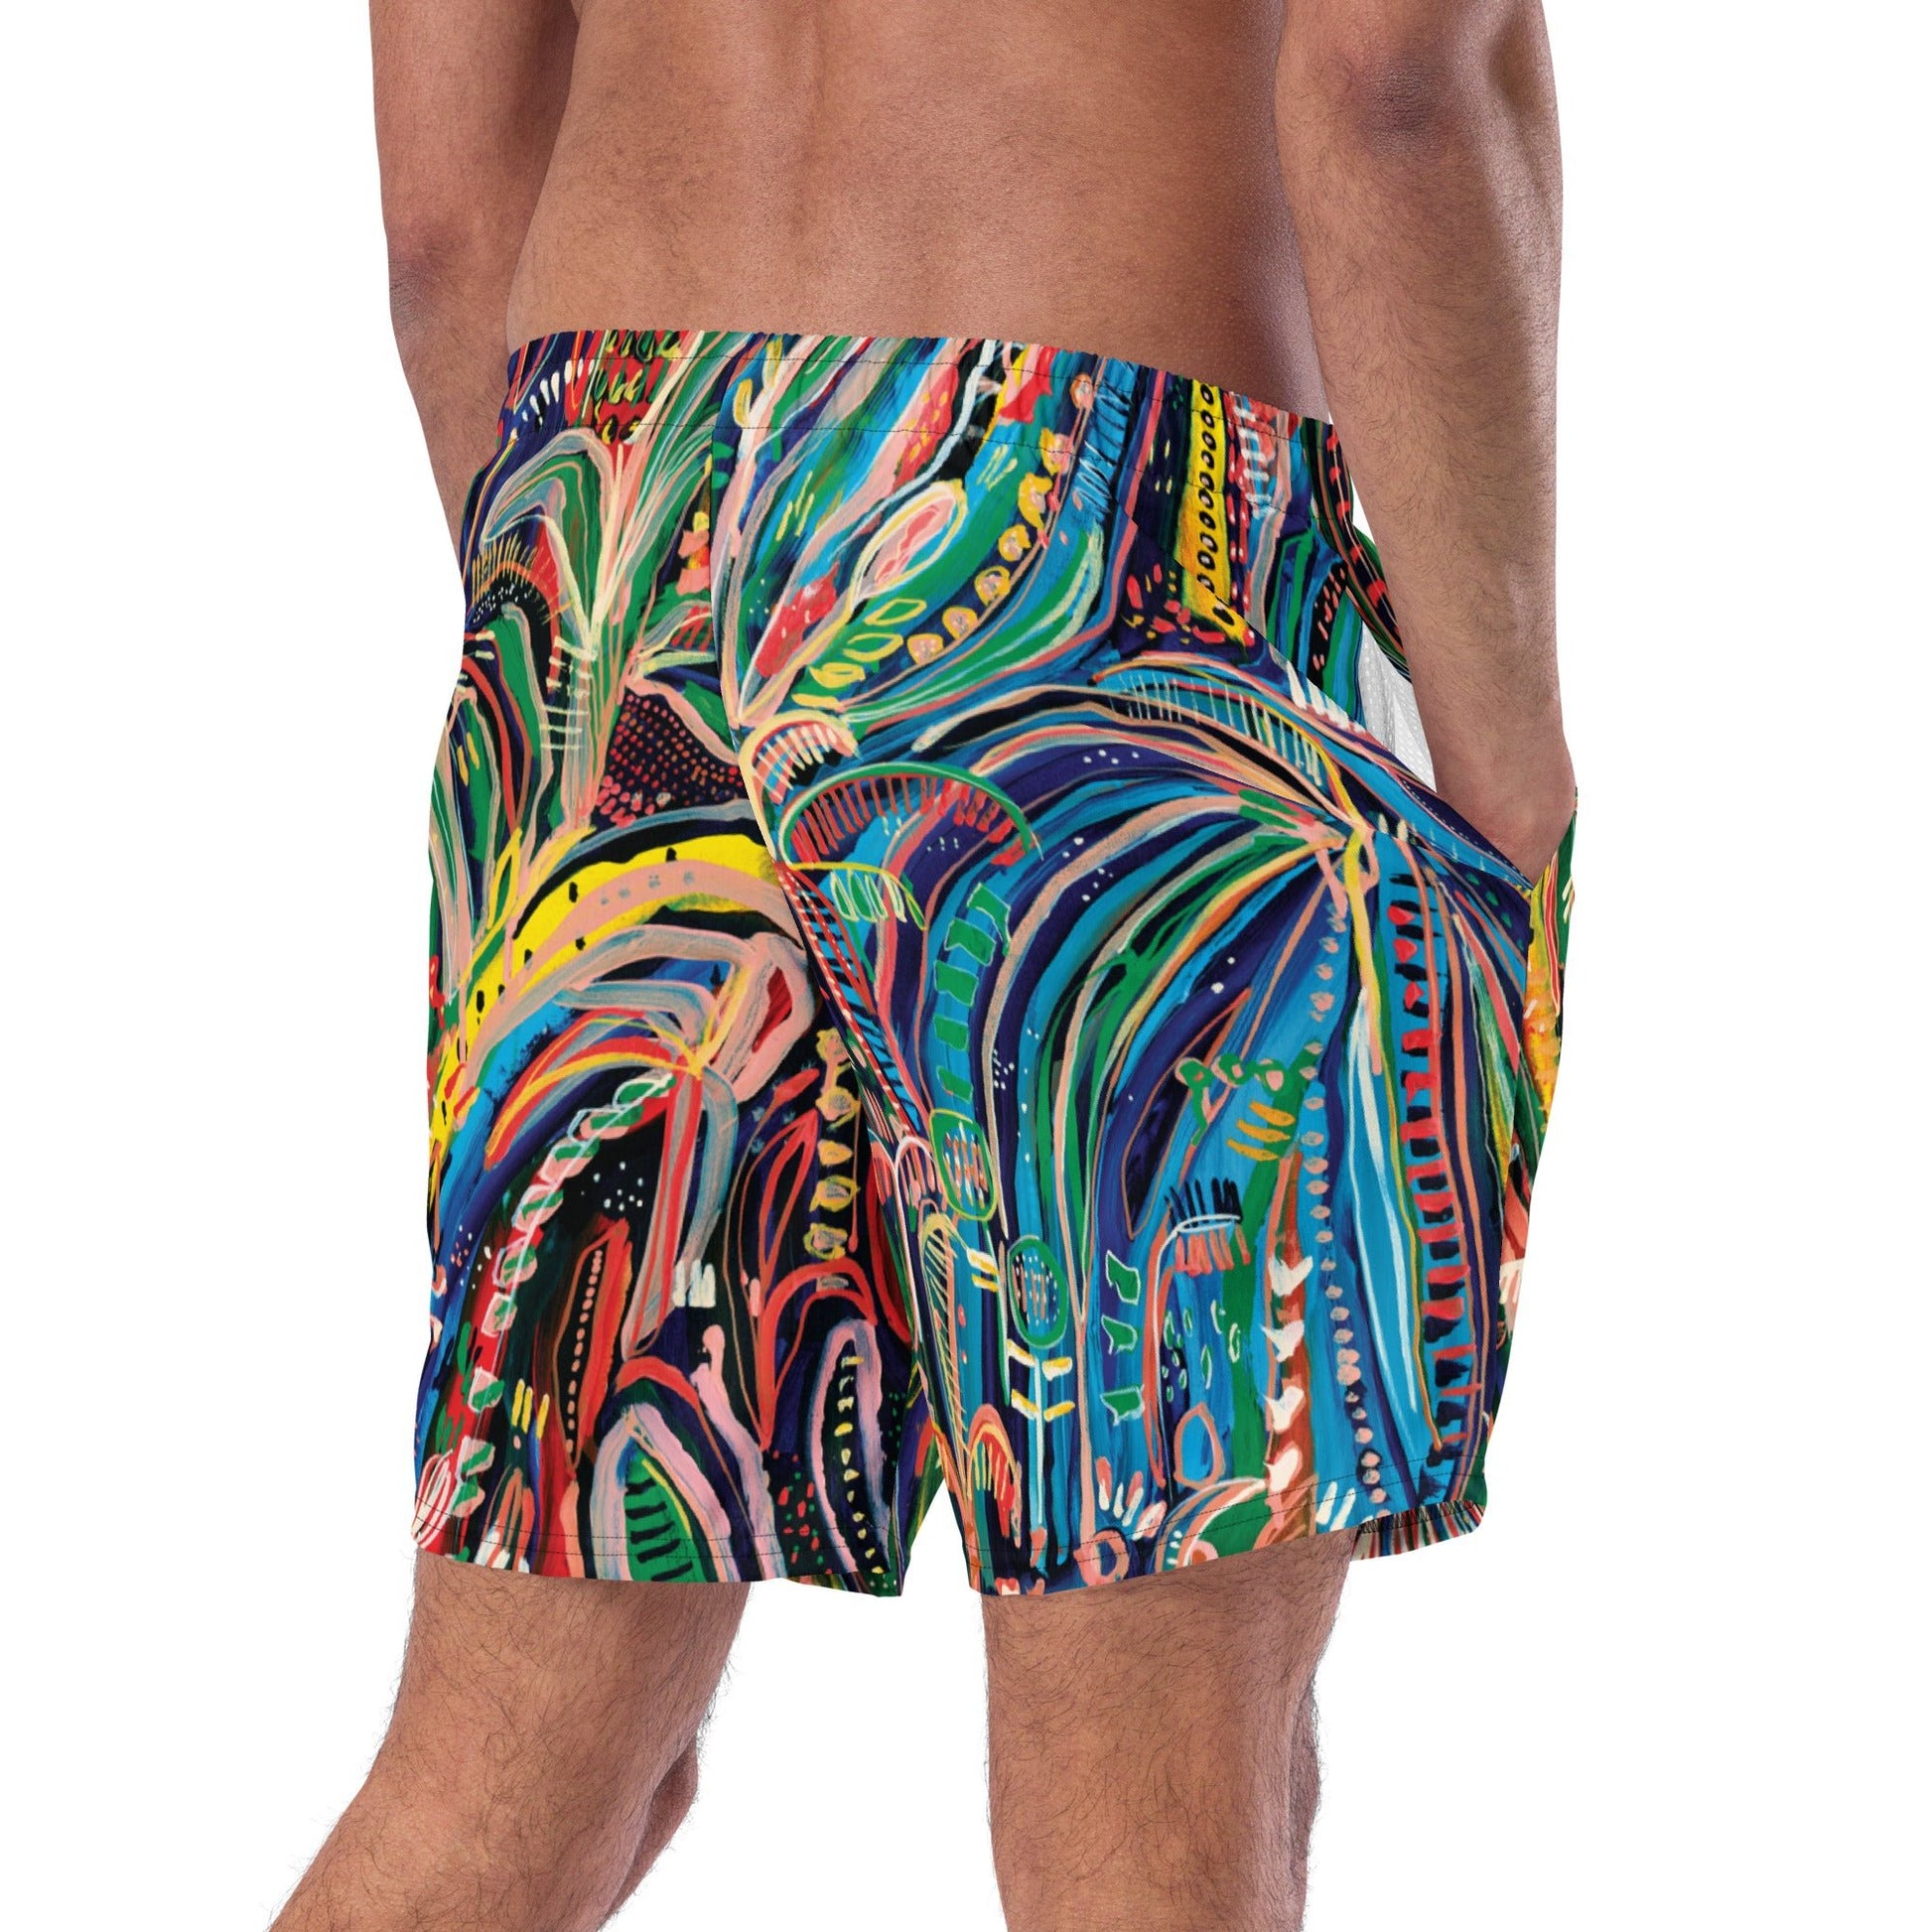 Club Tropicana Men's swim trunks - Milpali